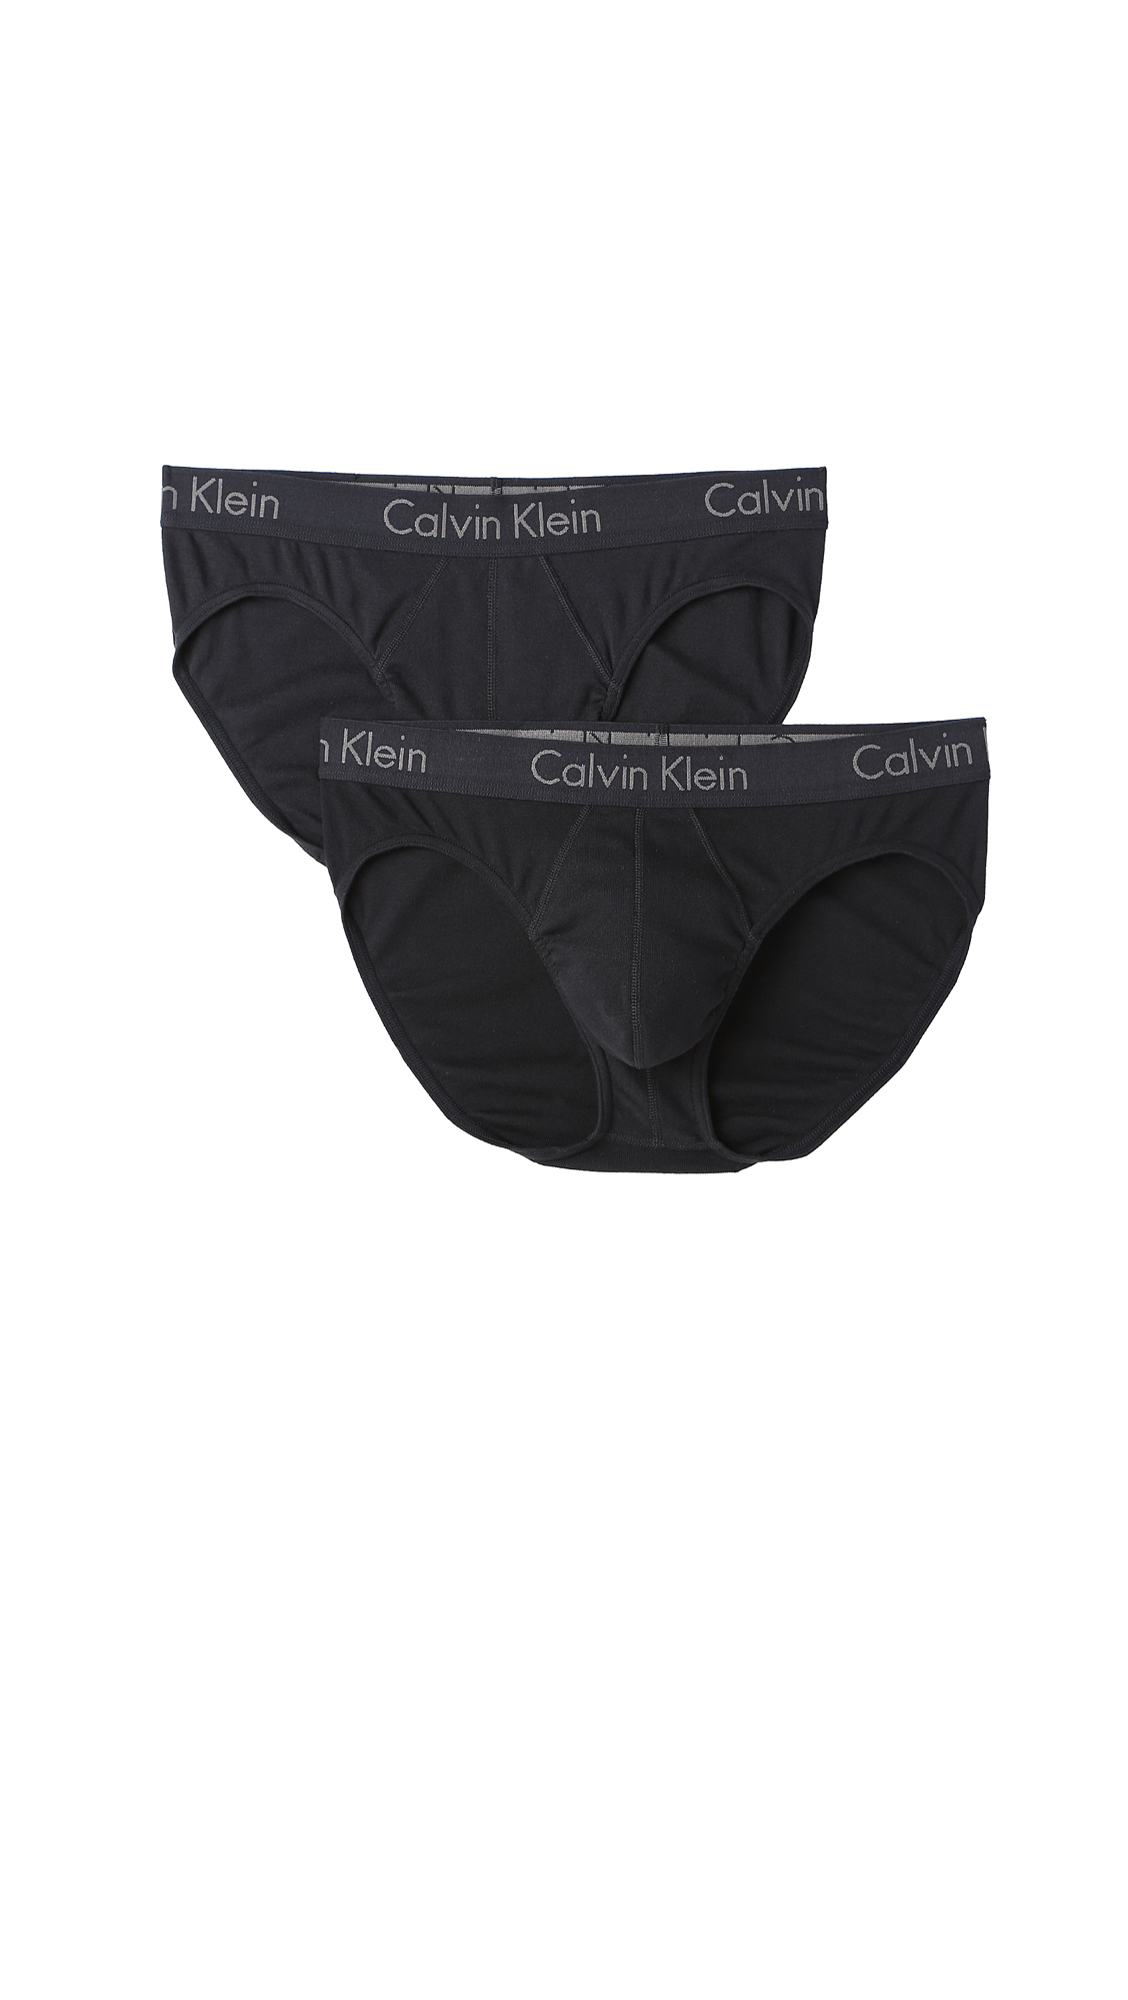 Calvin klein Ck Body 2 Pack Hip Briefs in Black for Men - Save 22% | Lyst